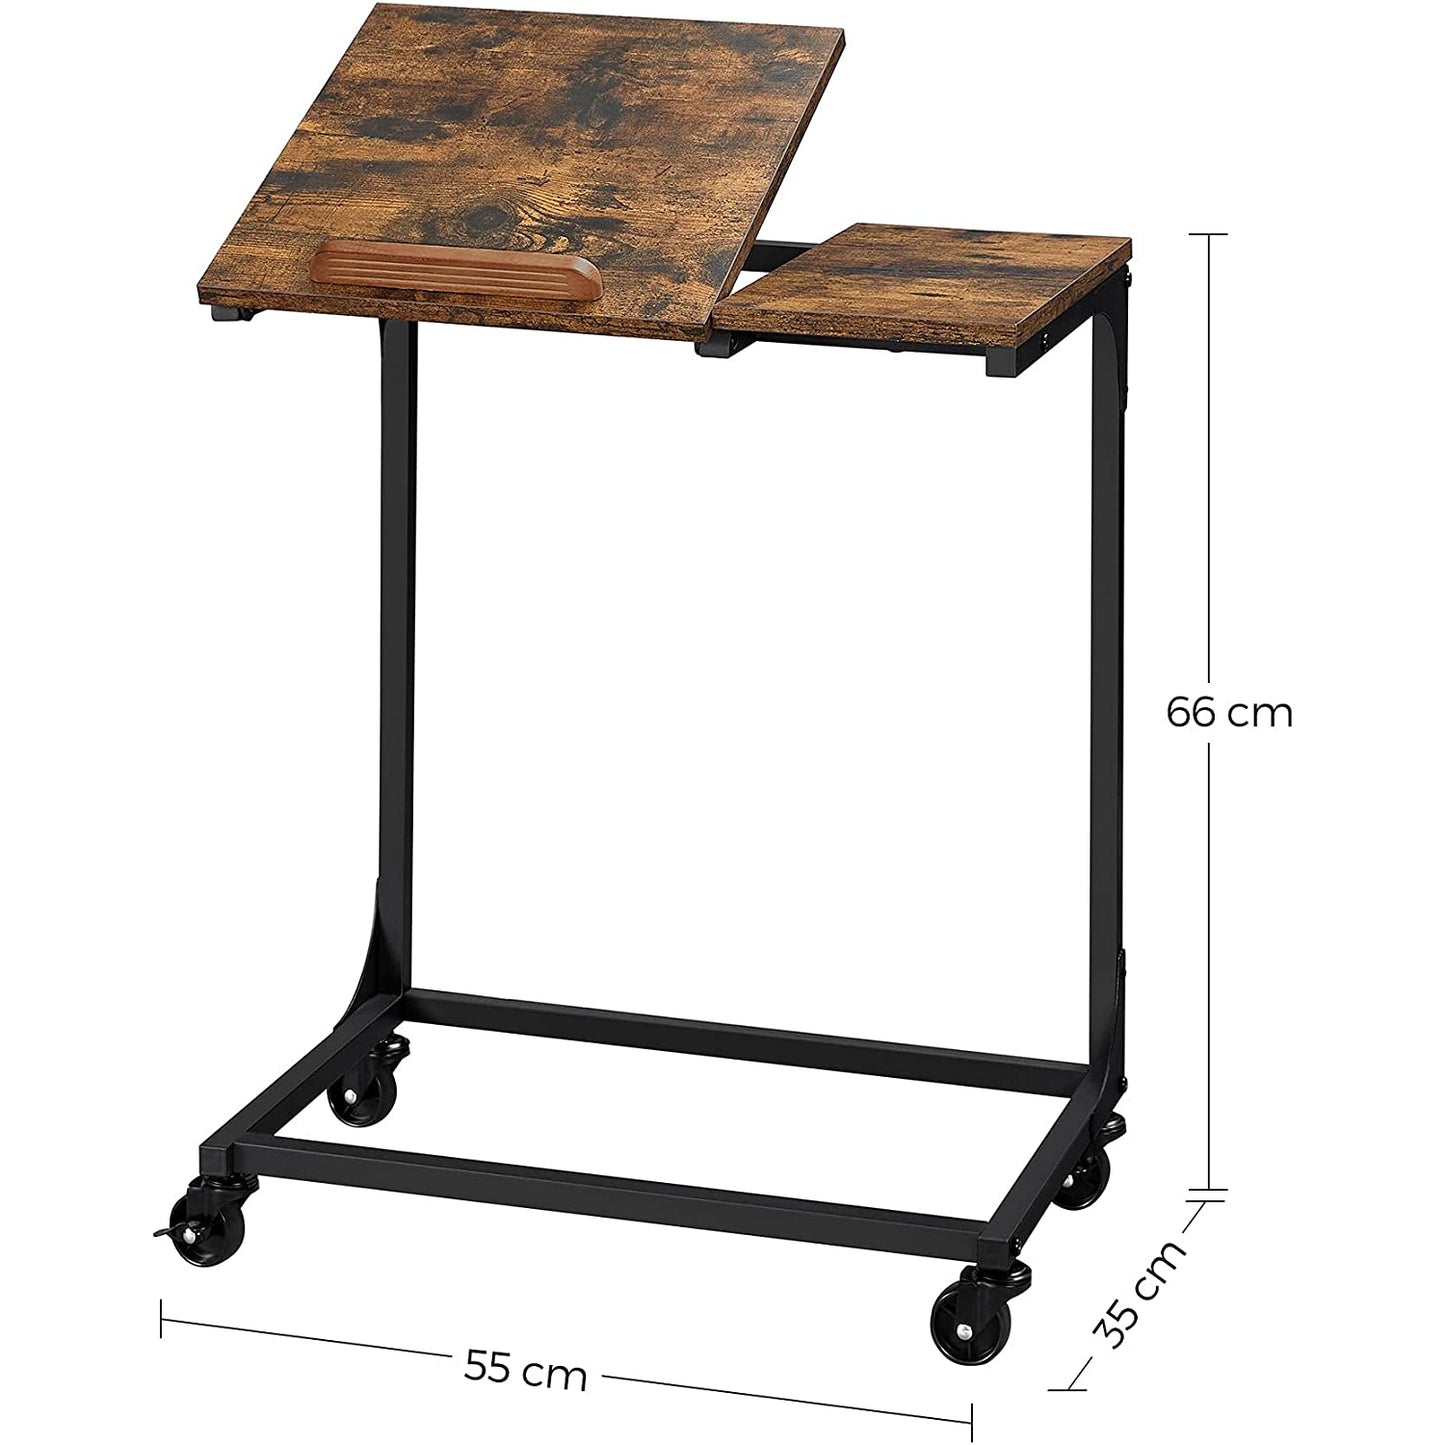 Nancy's Carbonear Laptop Table - Work Table - Adjustable Table Top - On Wheels - Engineered Wood - Metal - Brown - Black - 55 x 35 x 66 cm